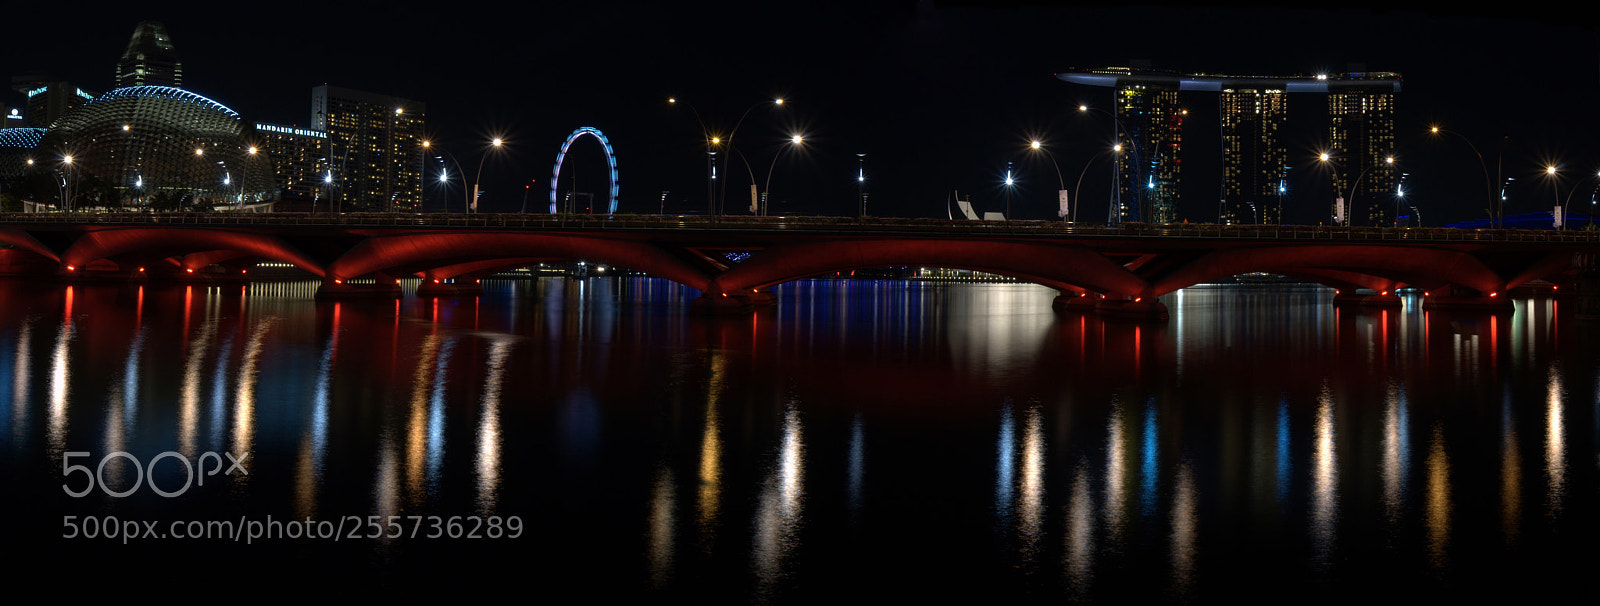 Nikon D7000 sample photo. Singapore river panorama photography